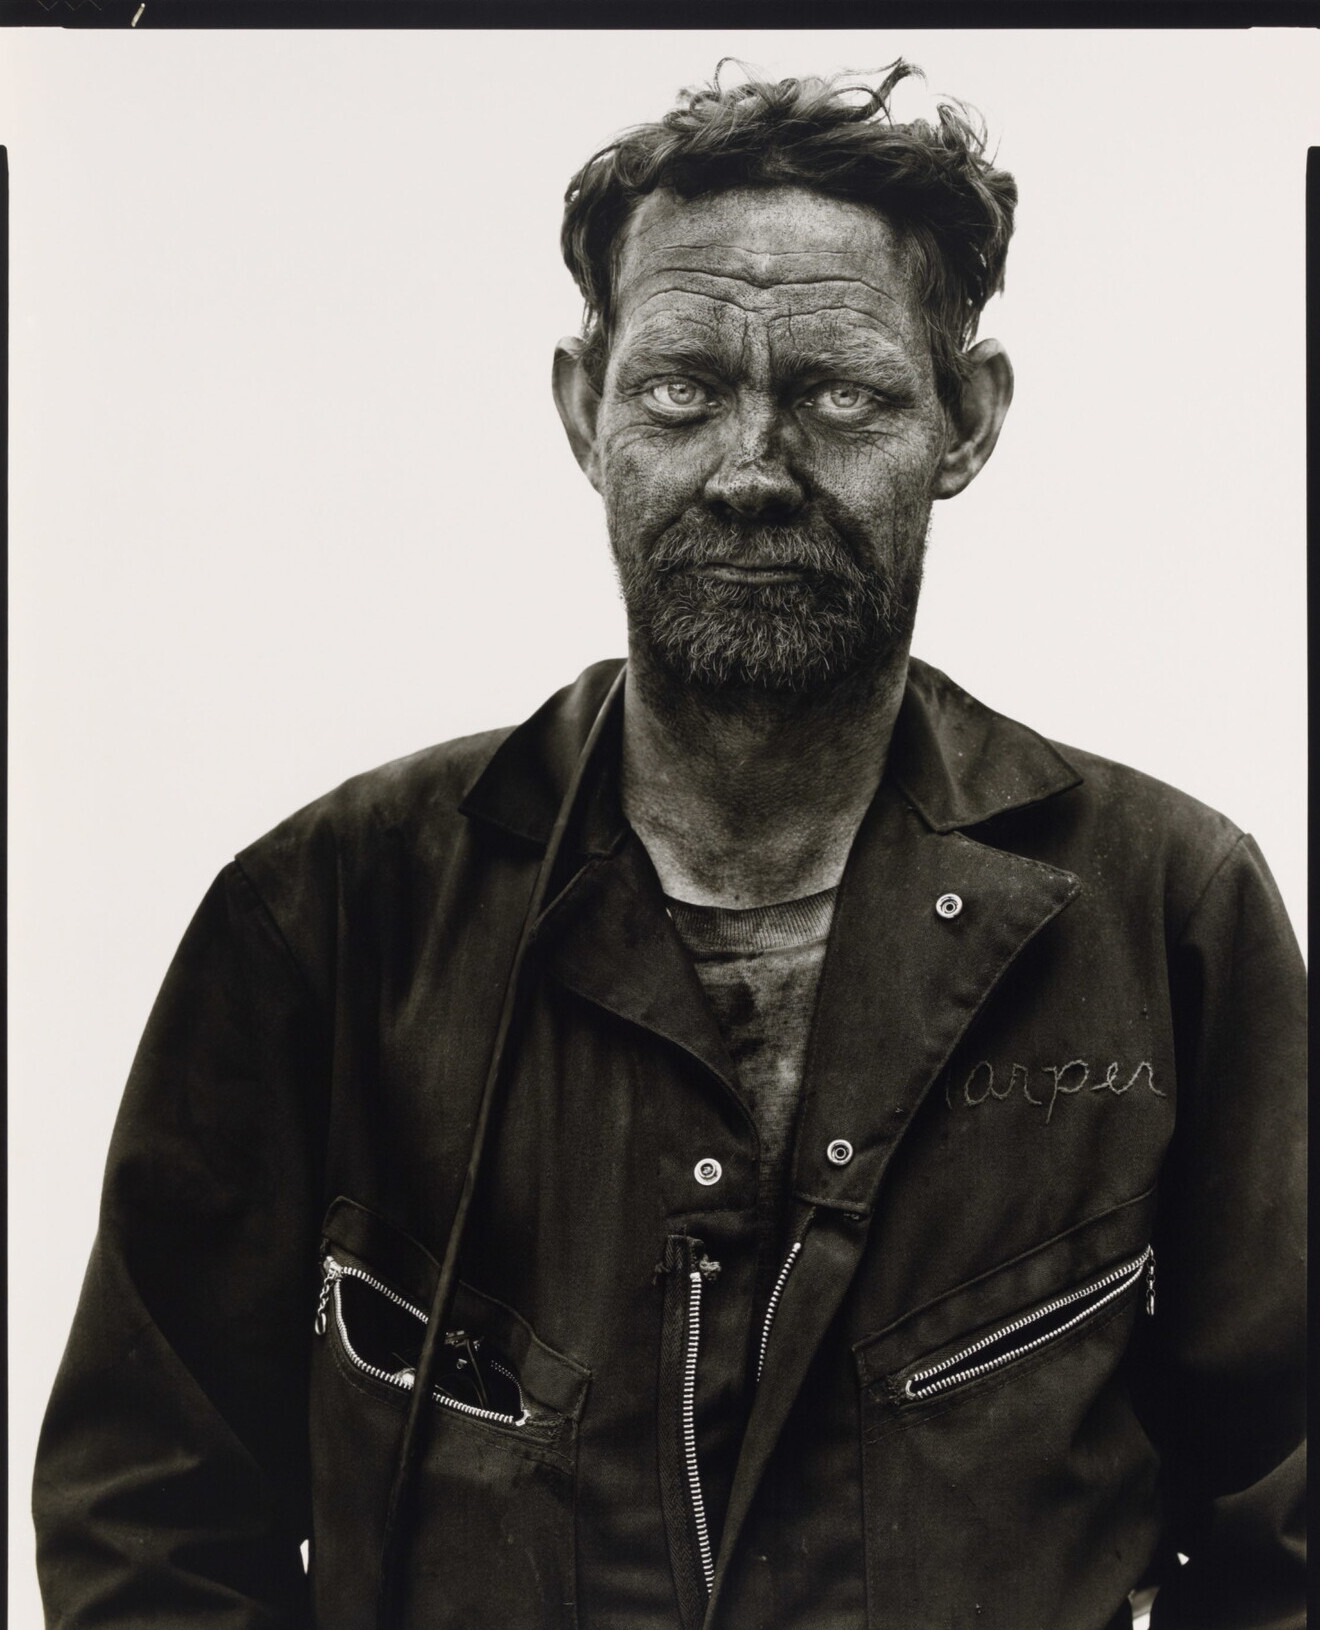 Дуг Харпер, шахтер, Сомерсет, Колорадо, 1980 г. Фотограф Ричард Аведон